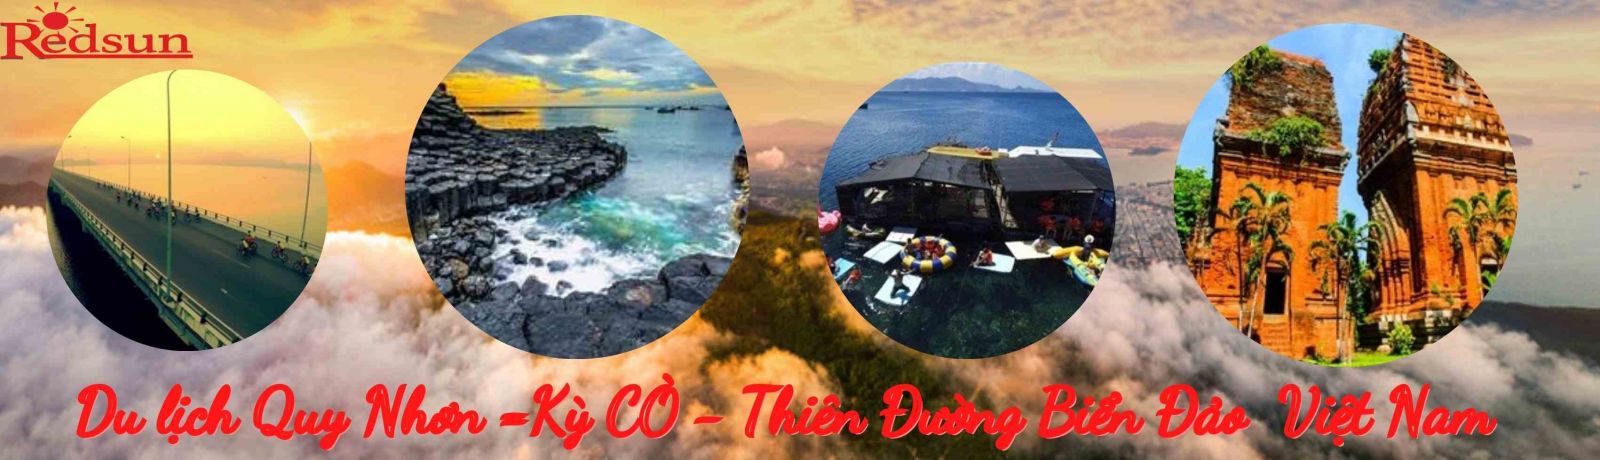 Du lịch taijQuy Nhơn - Kỳ Cò - Thiên Đường Biển Đảo 3 ngày 2 đêm cùng Red Sun 